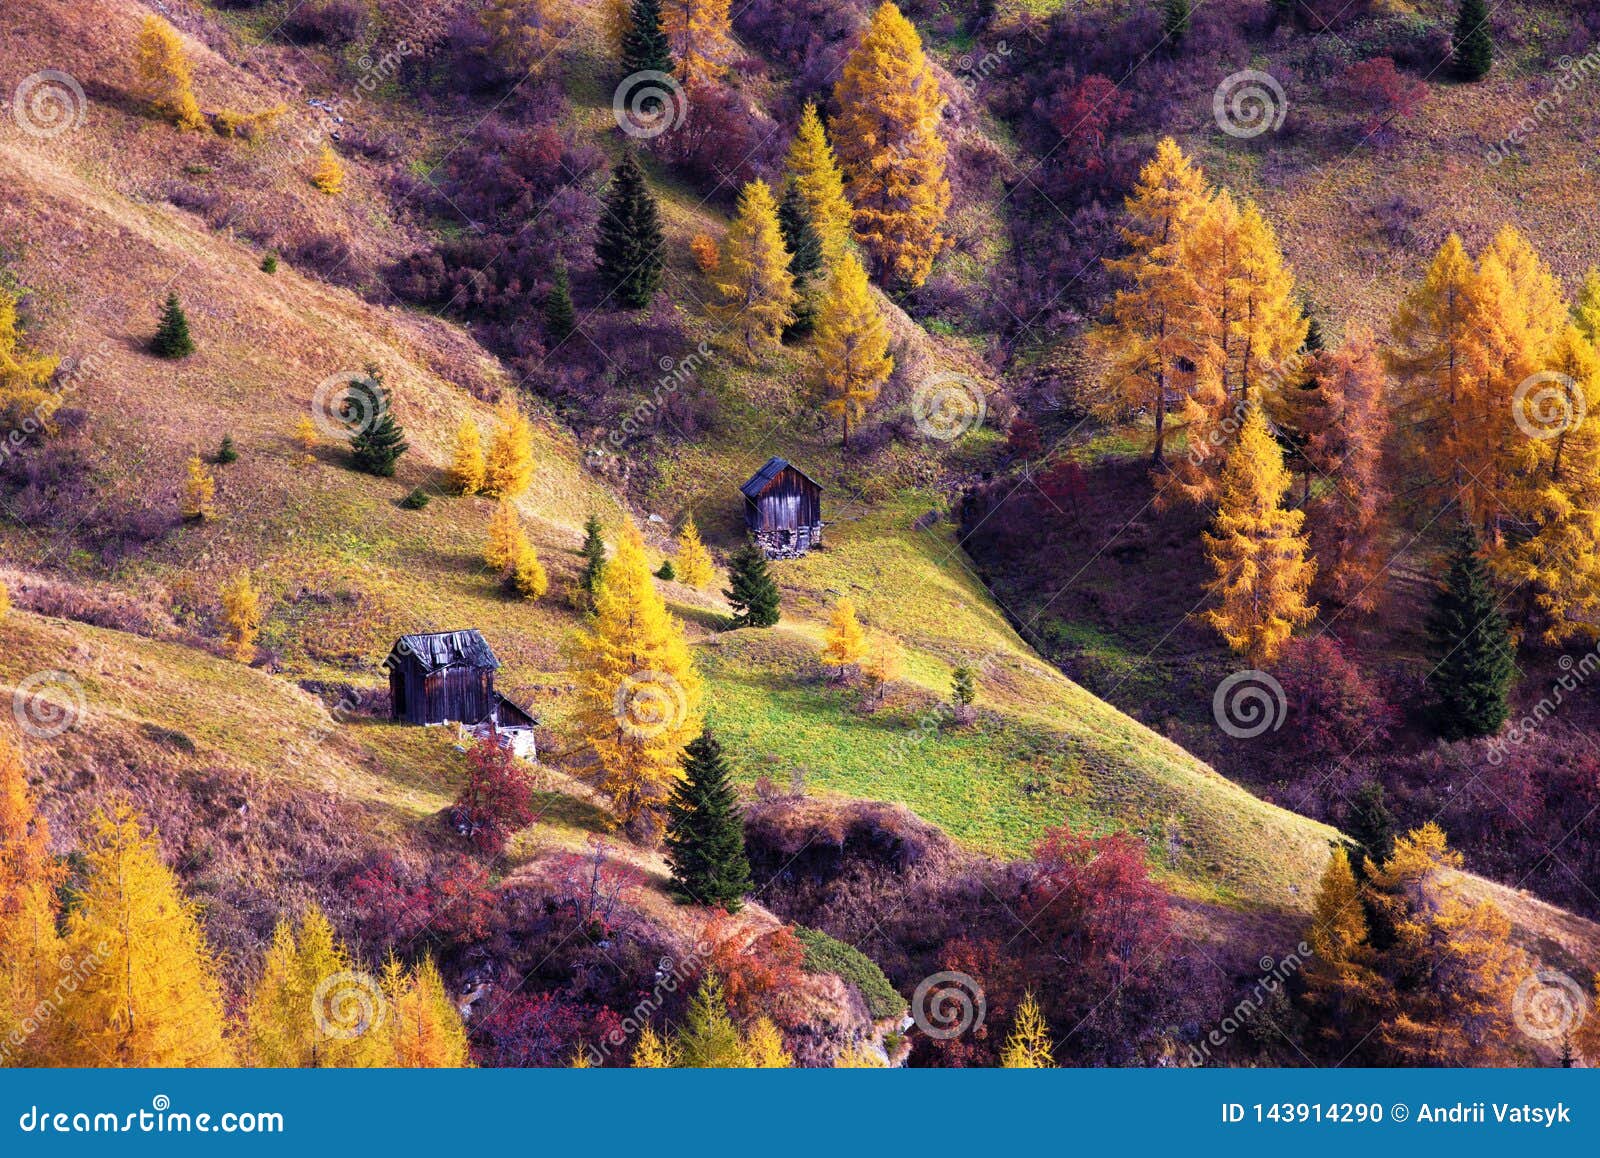 在白云岩的神秘的不可思议的美好 惊人的风景秋天风景 波尔扎诺自治省 阿尔卑斯 意大利迷人的地方库存照片 图片包括有迷人的地方 在白云岩的神秘 的不可思议的美好 惊人的风景秋天风景 波尔扎诺自治省 阿尔卑斯 意大利